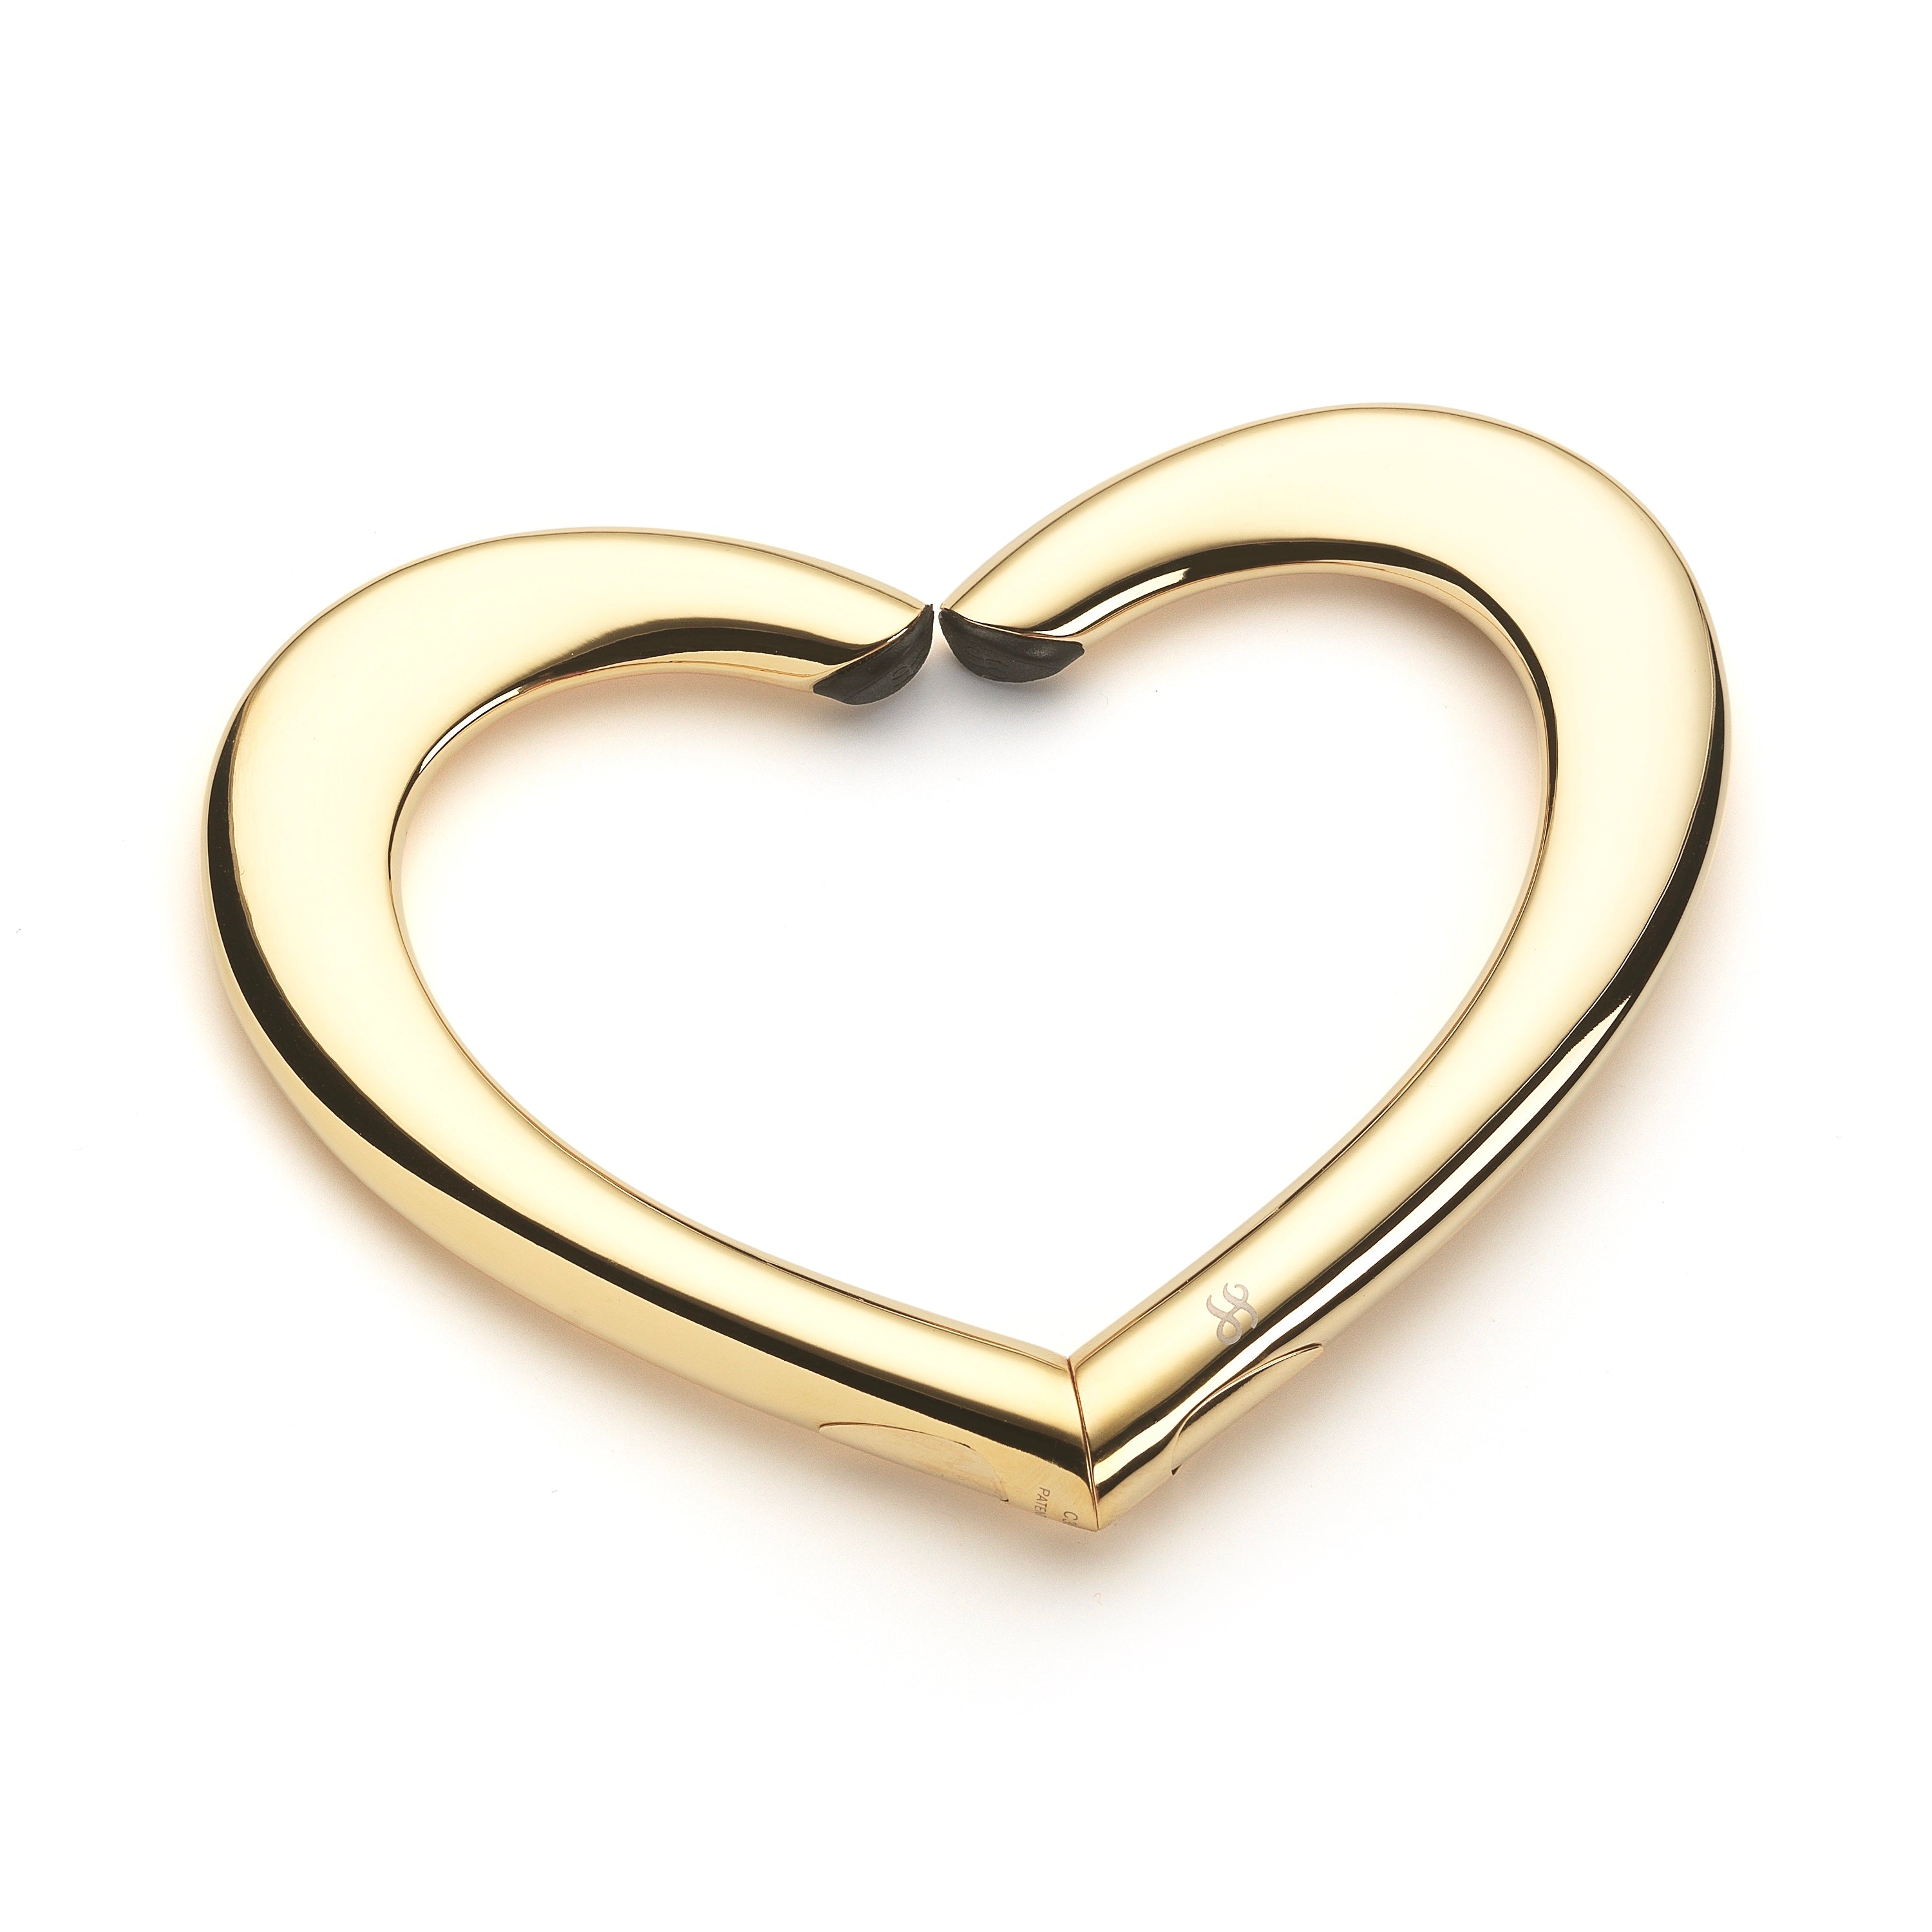 Heart purse hanger gold 14k